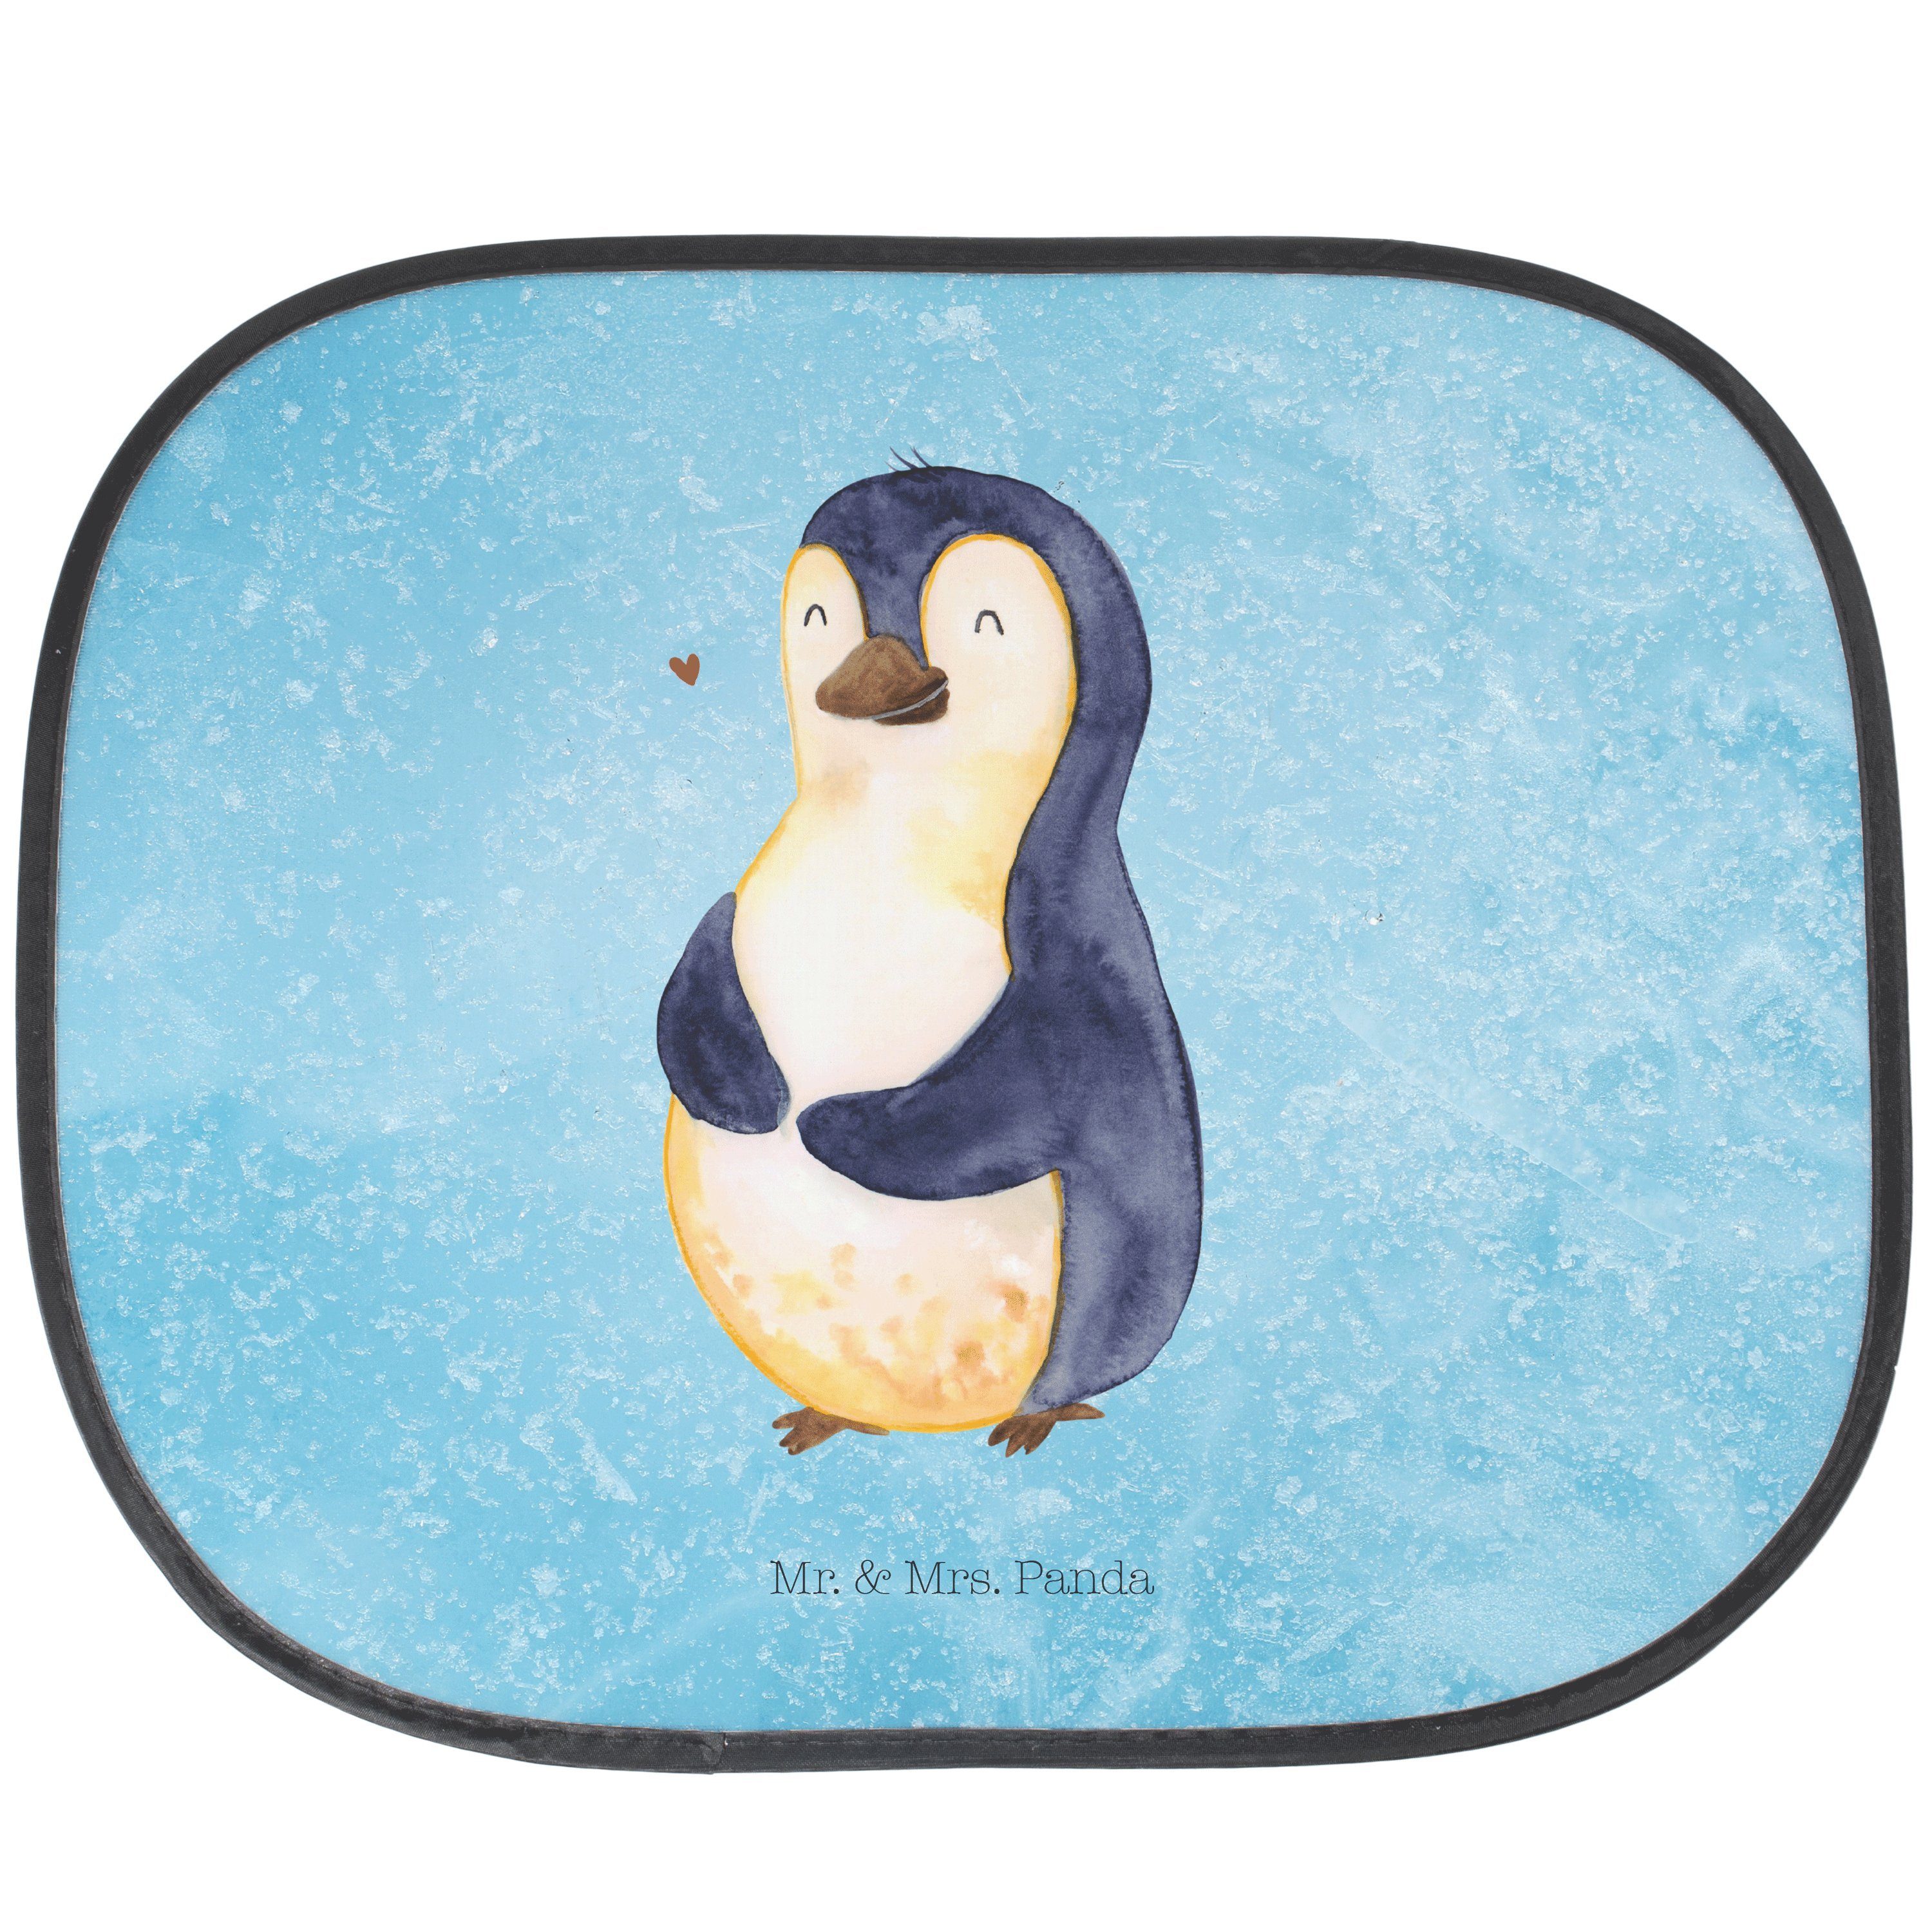 Sonnenschutz Pinguin Diät - Eisblau - Geschenk, glücklich, Selbstliebe, Auto Sonne, Mr. & Mrs. Panda, Seidenmatt